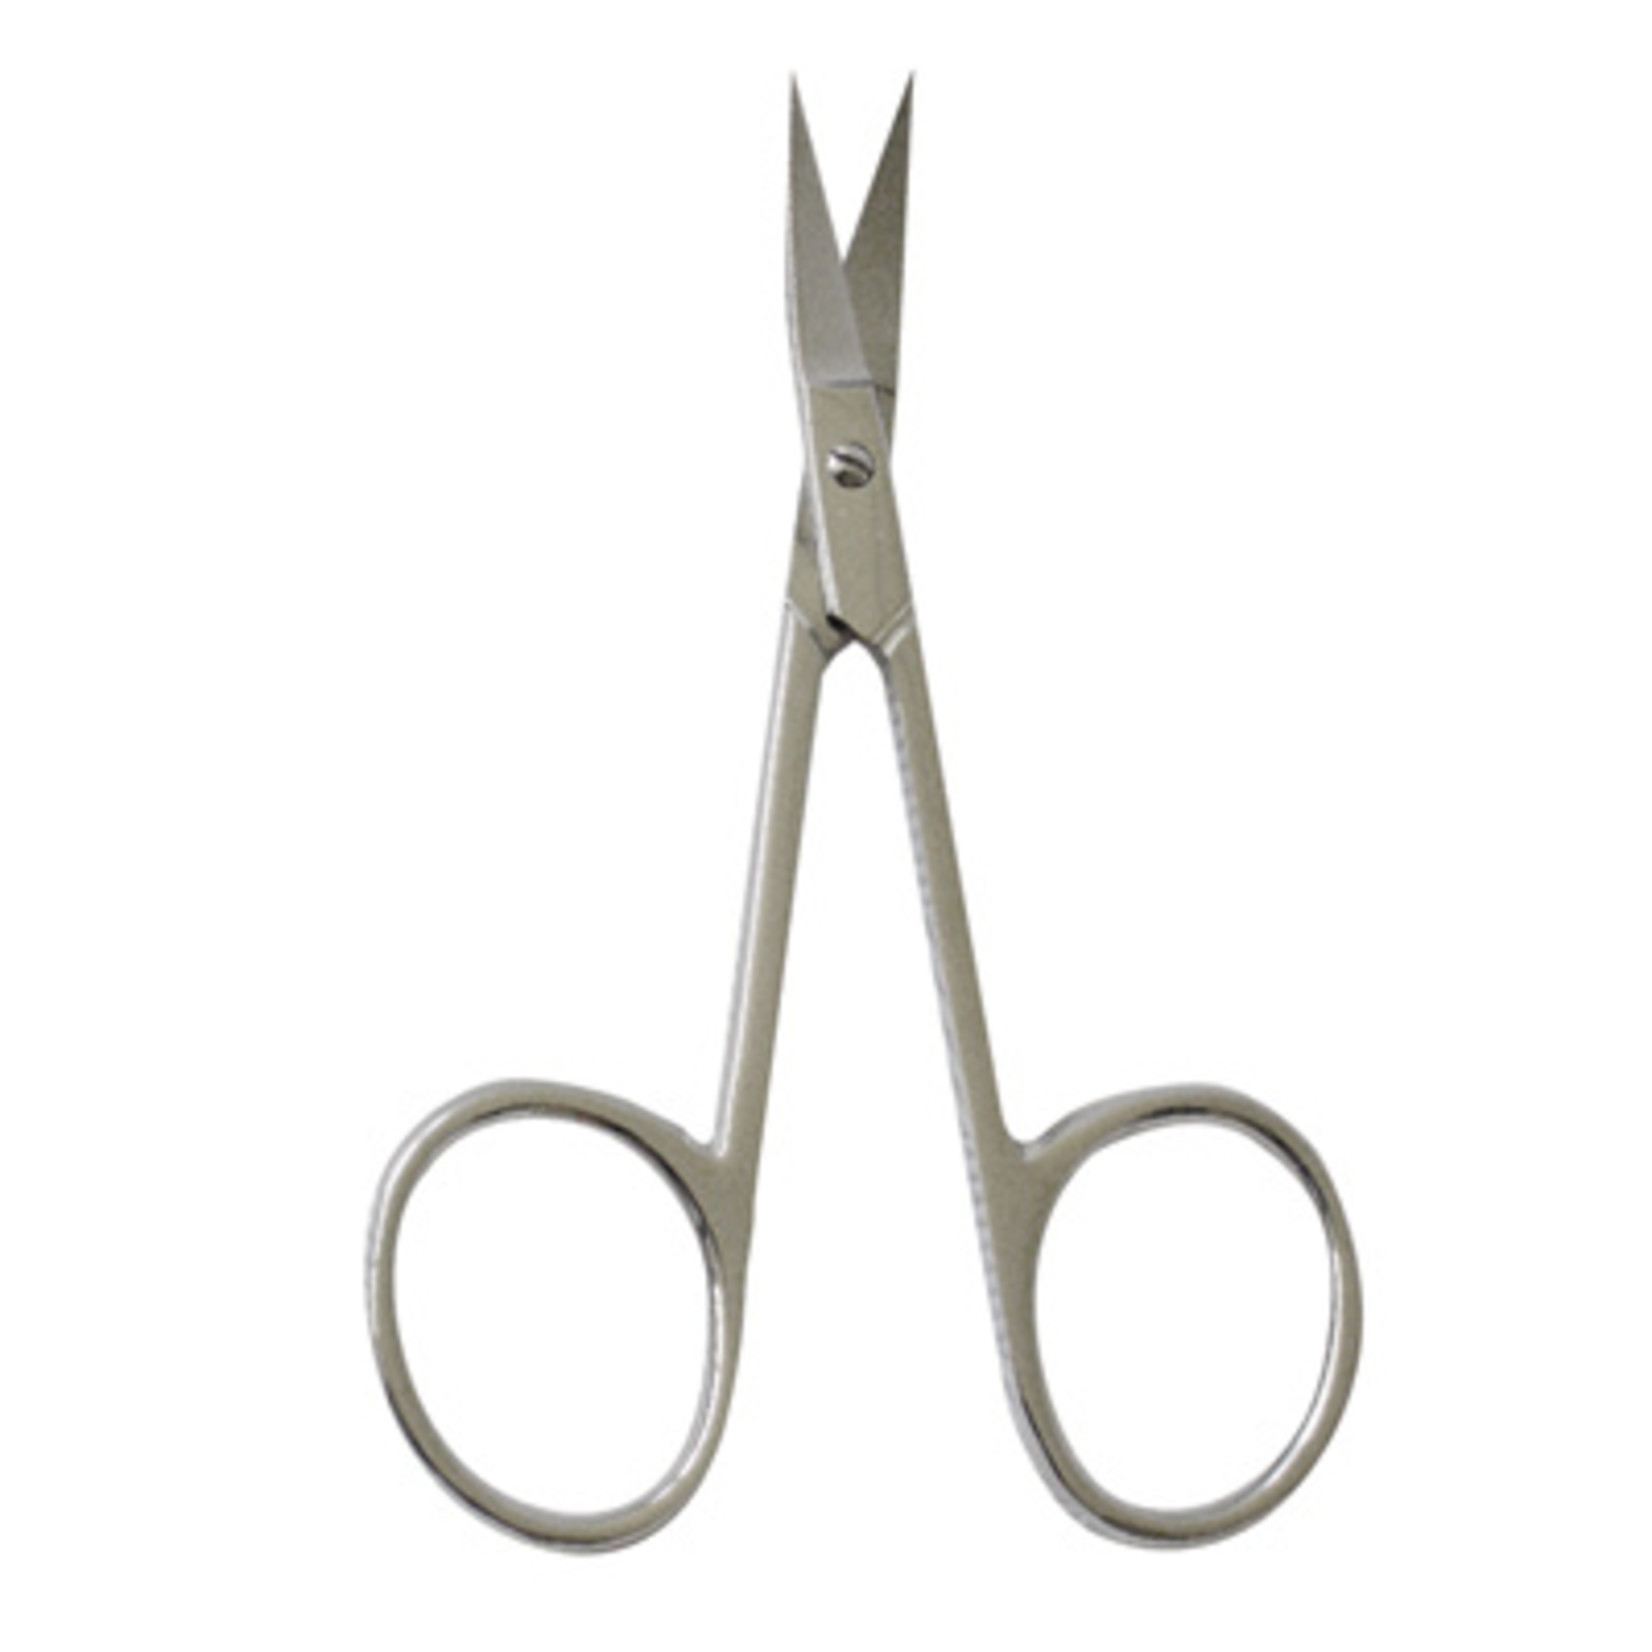 Satin Edge - Cuticle Scissors (SE-2010) - Silver